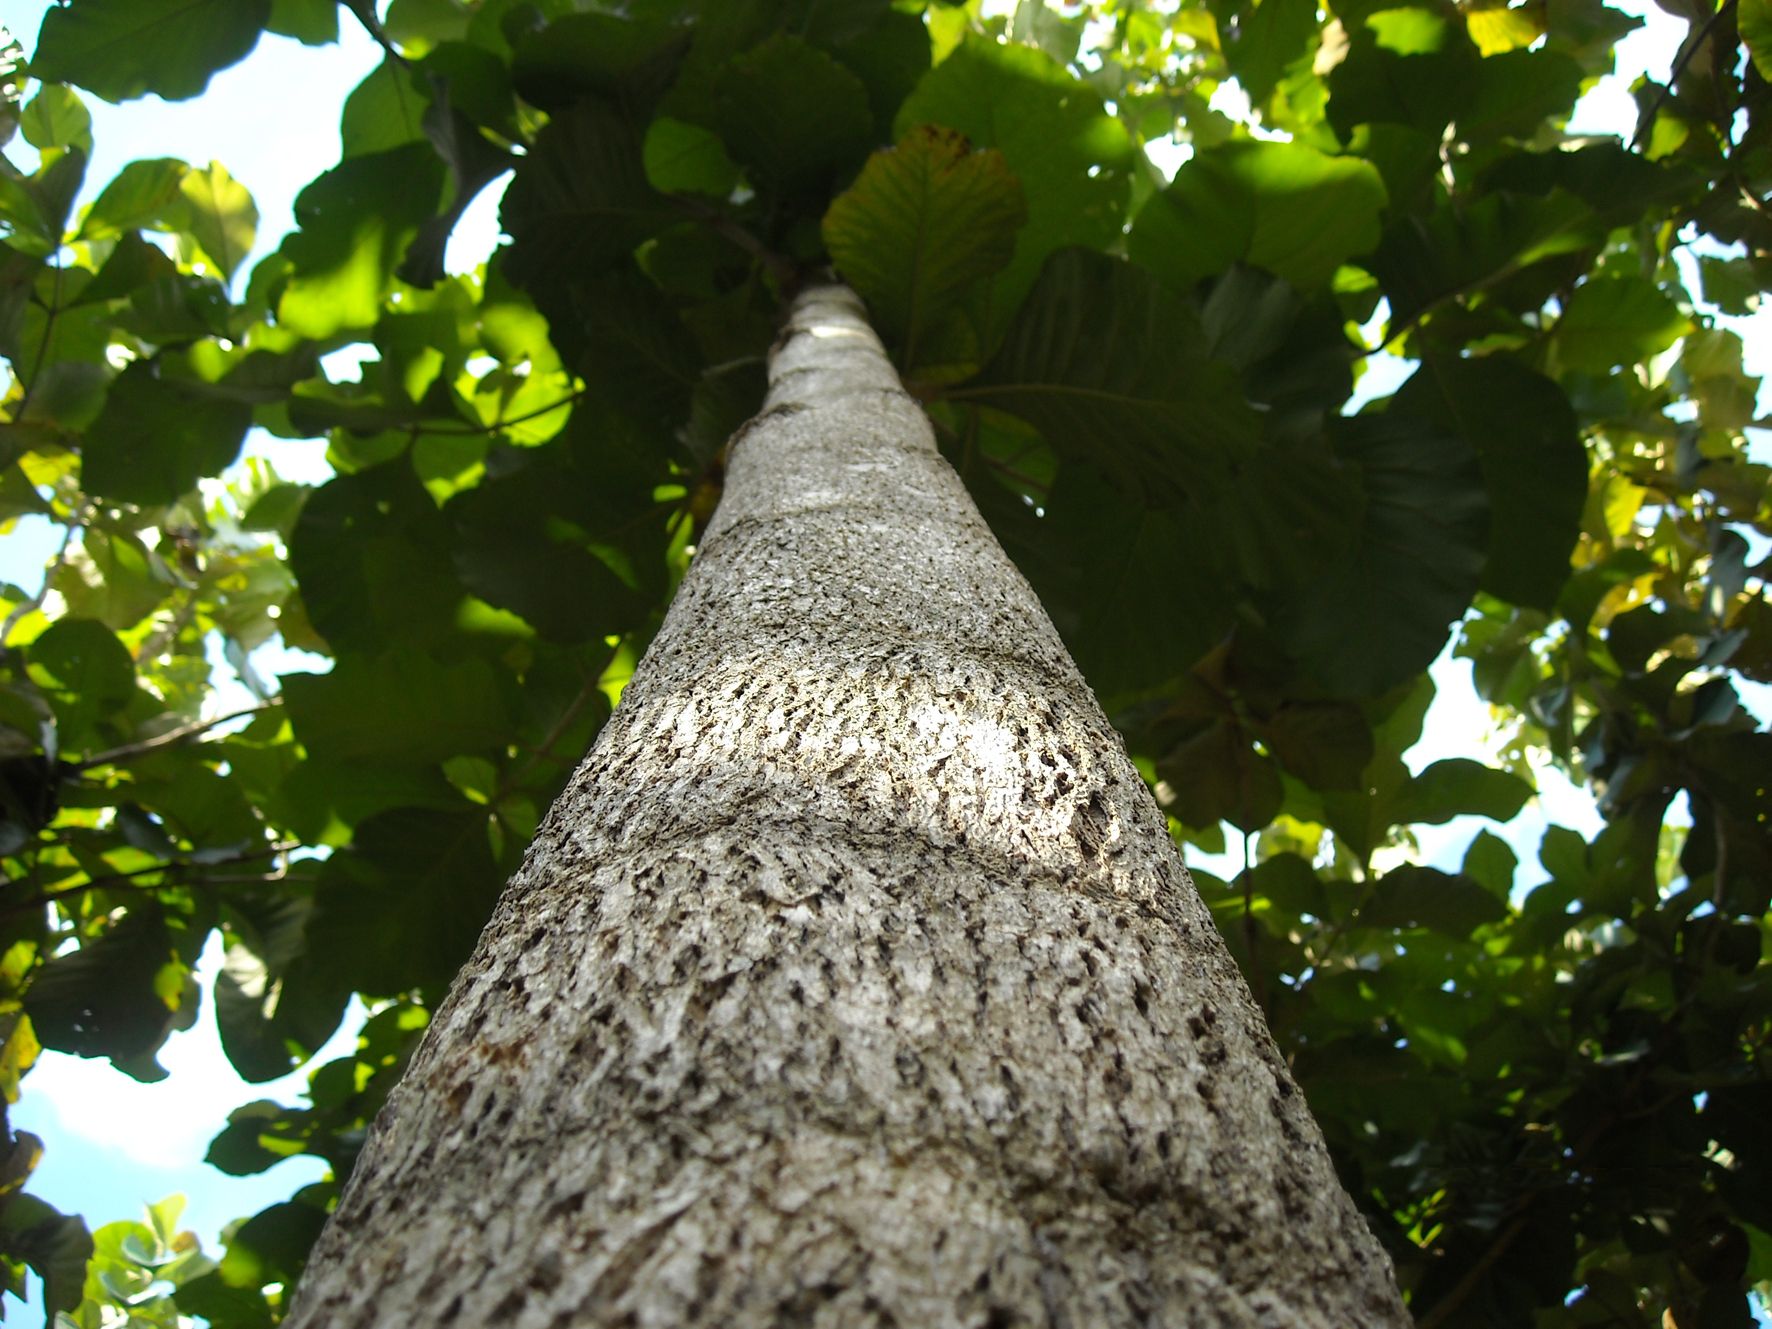 ESA, Teakbaum, regenwald, hilfe, positive nachrichten